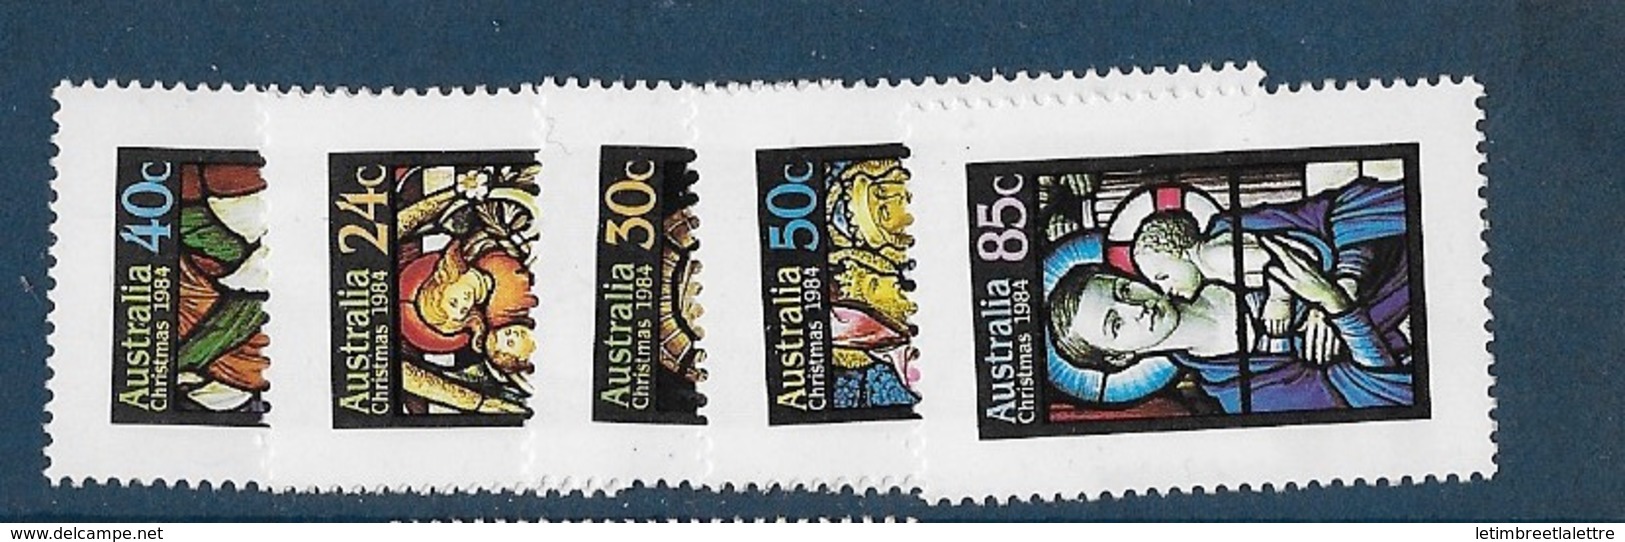 Australie N°875 à 879** - Mint Stamps